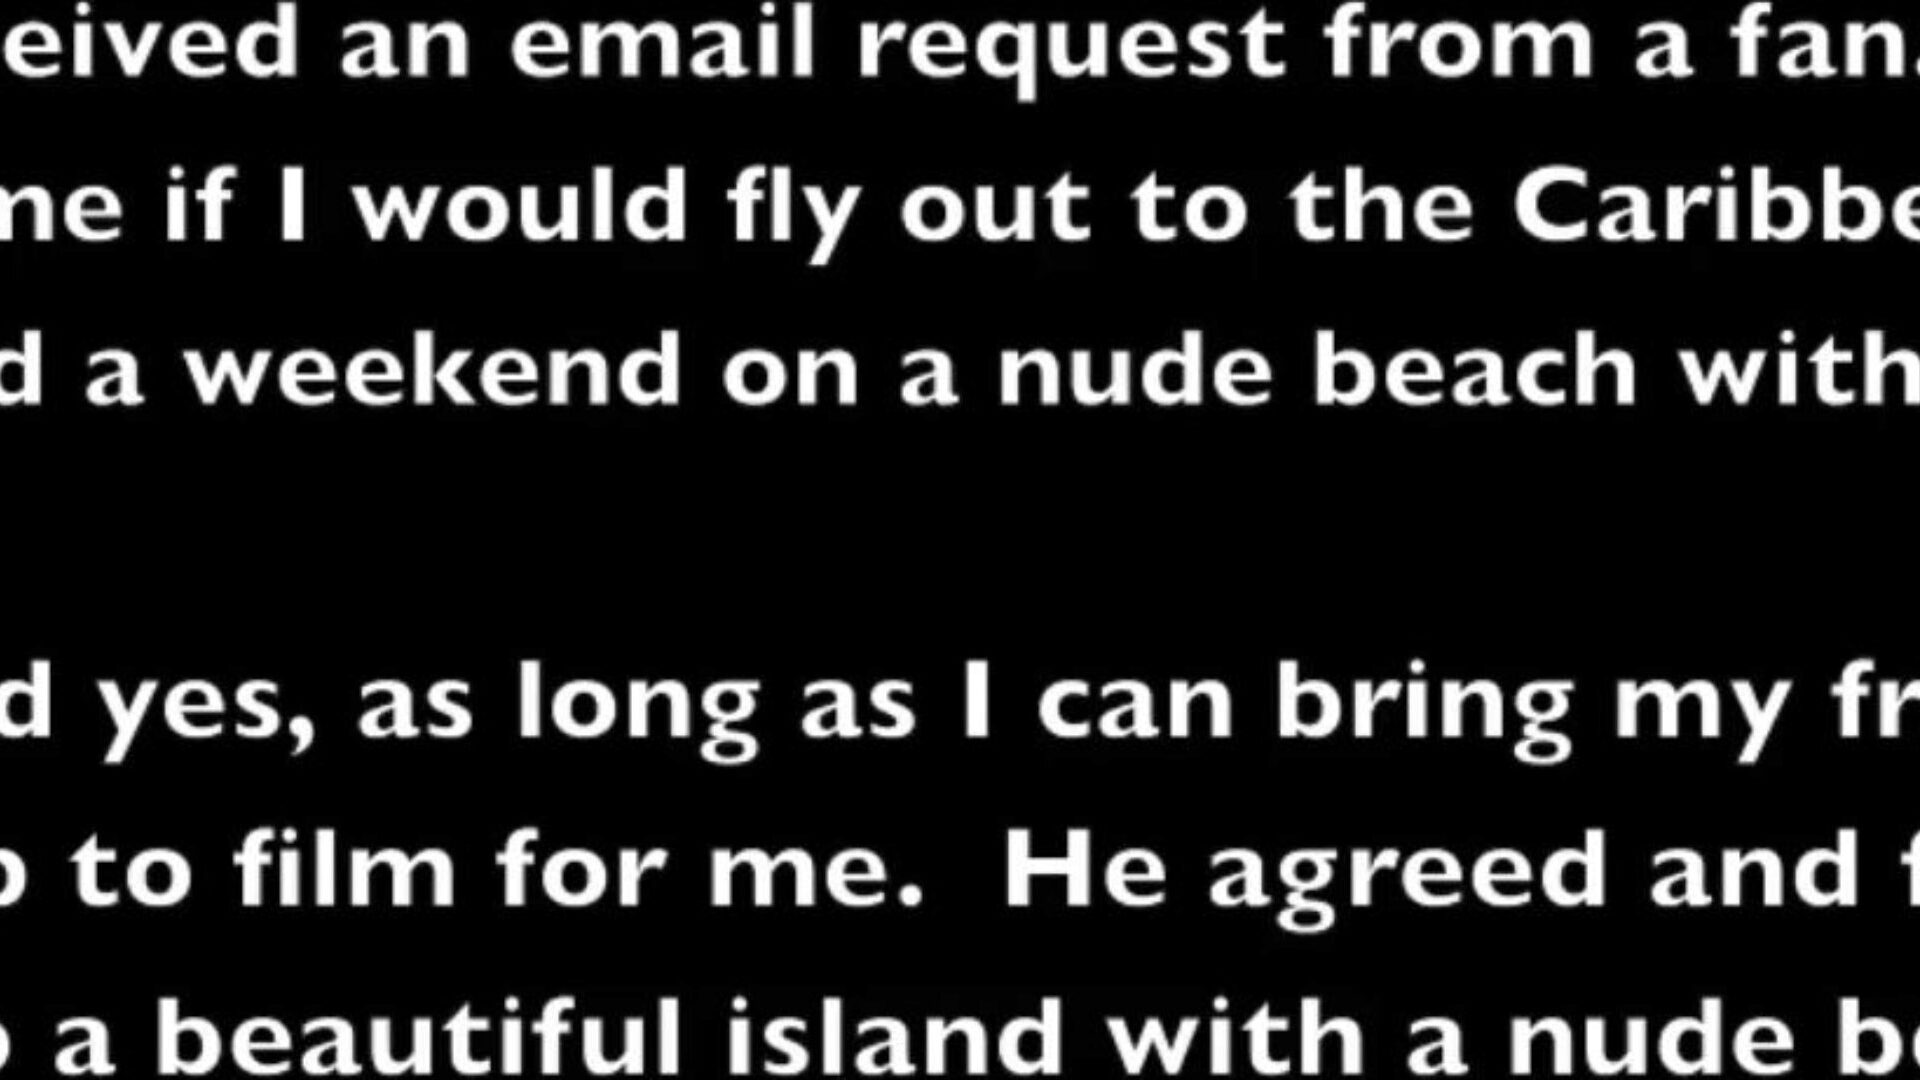 Helena Price - мои каникулы на нудистском пляже в Карибском бассейне, часть 2 - чувствовал себя черный мужчина!